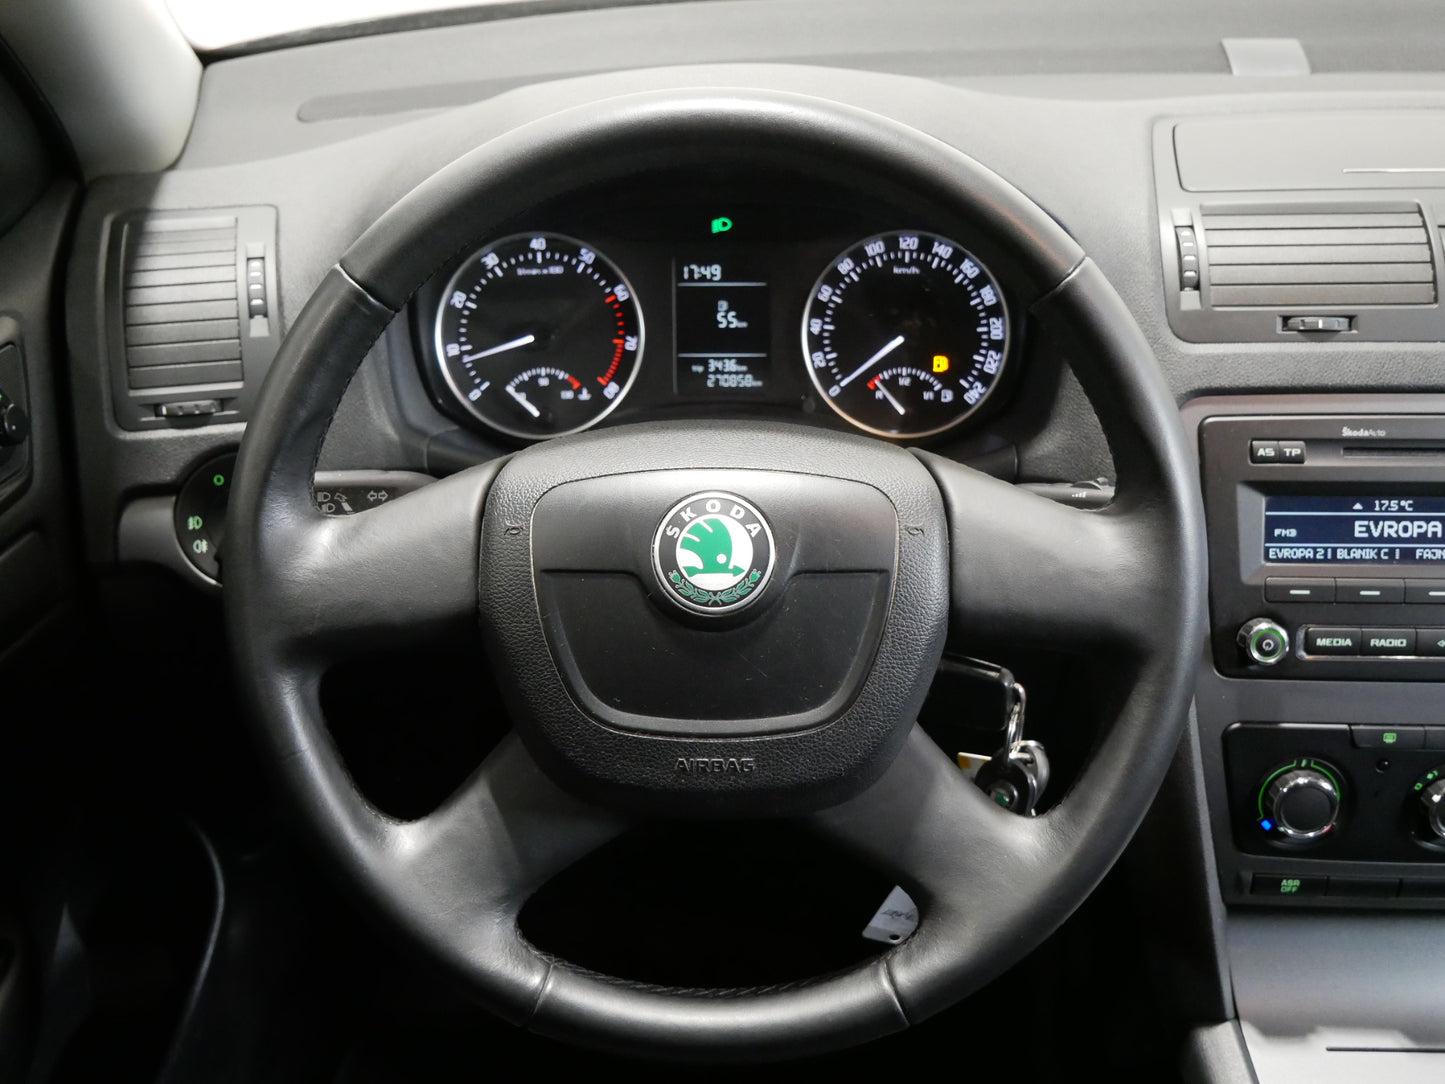 Škoda Octavia 1.6 MPI 75 kW Tour